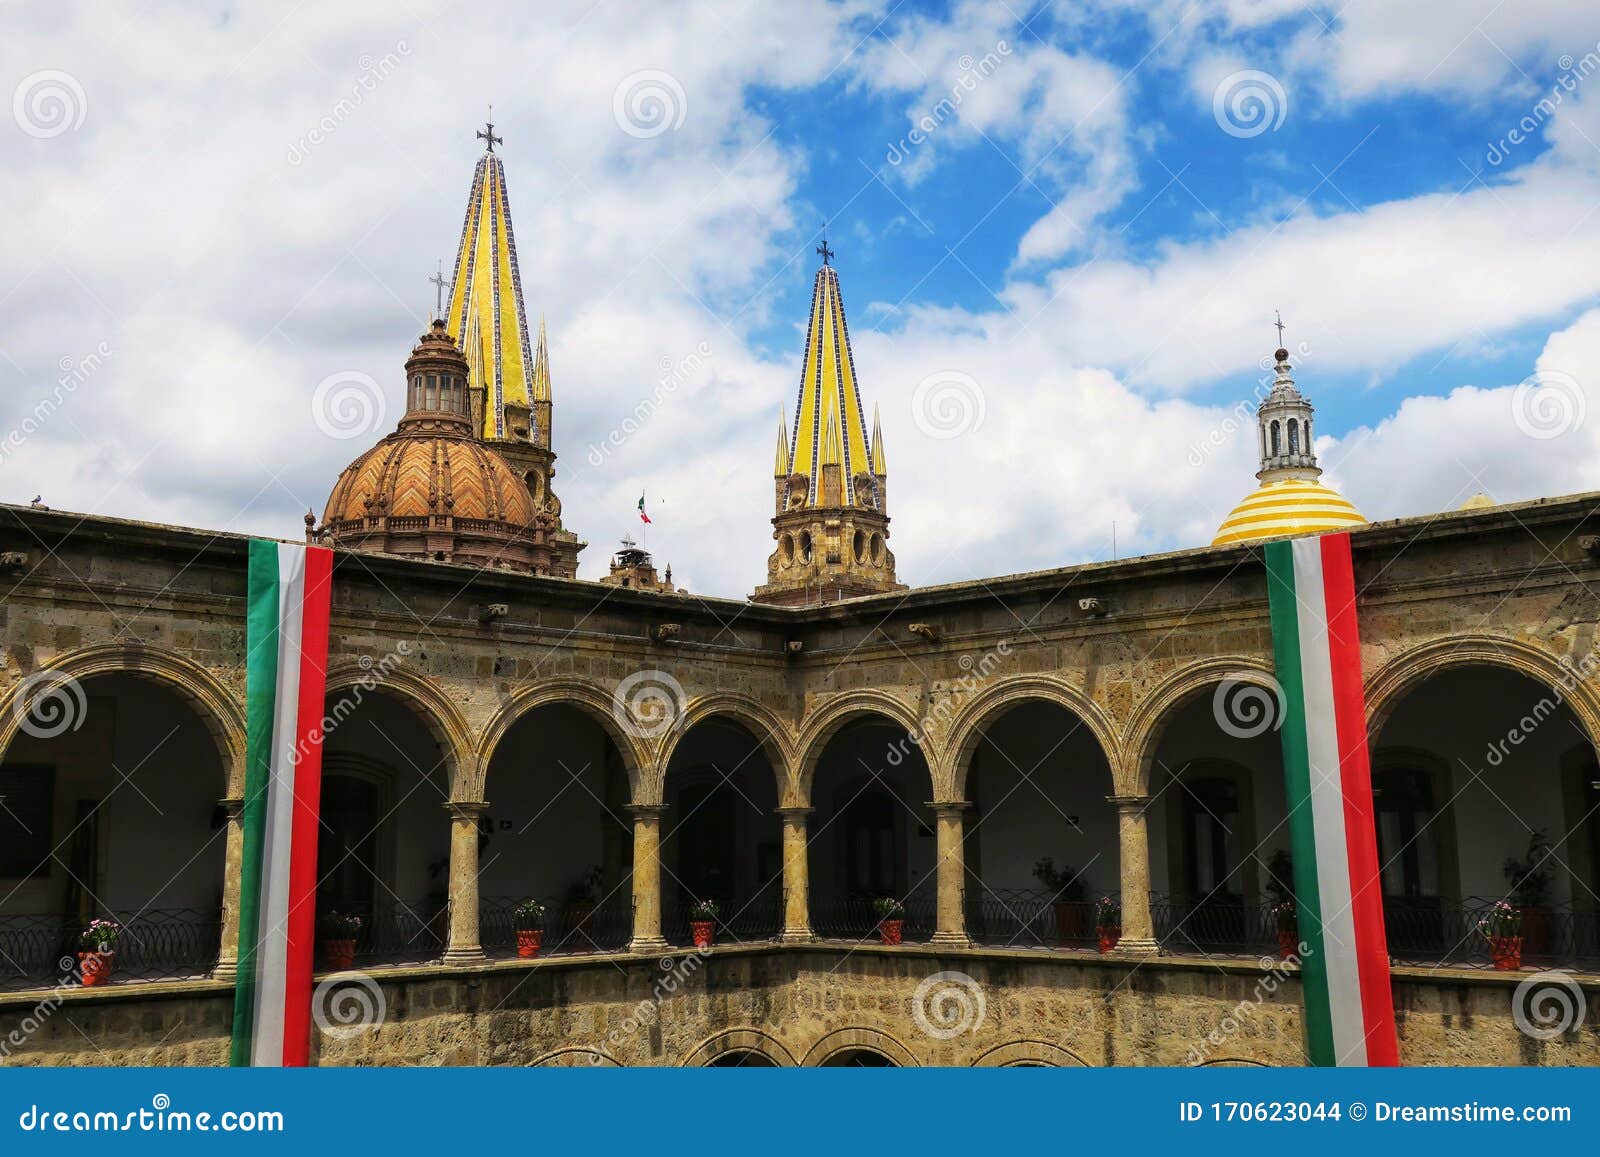 a view of palacio de gobierno del estado de jalisco in guadalajara, mexico